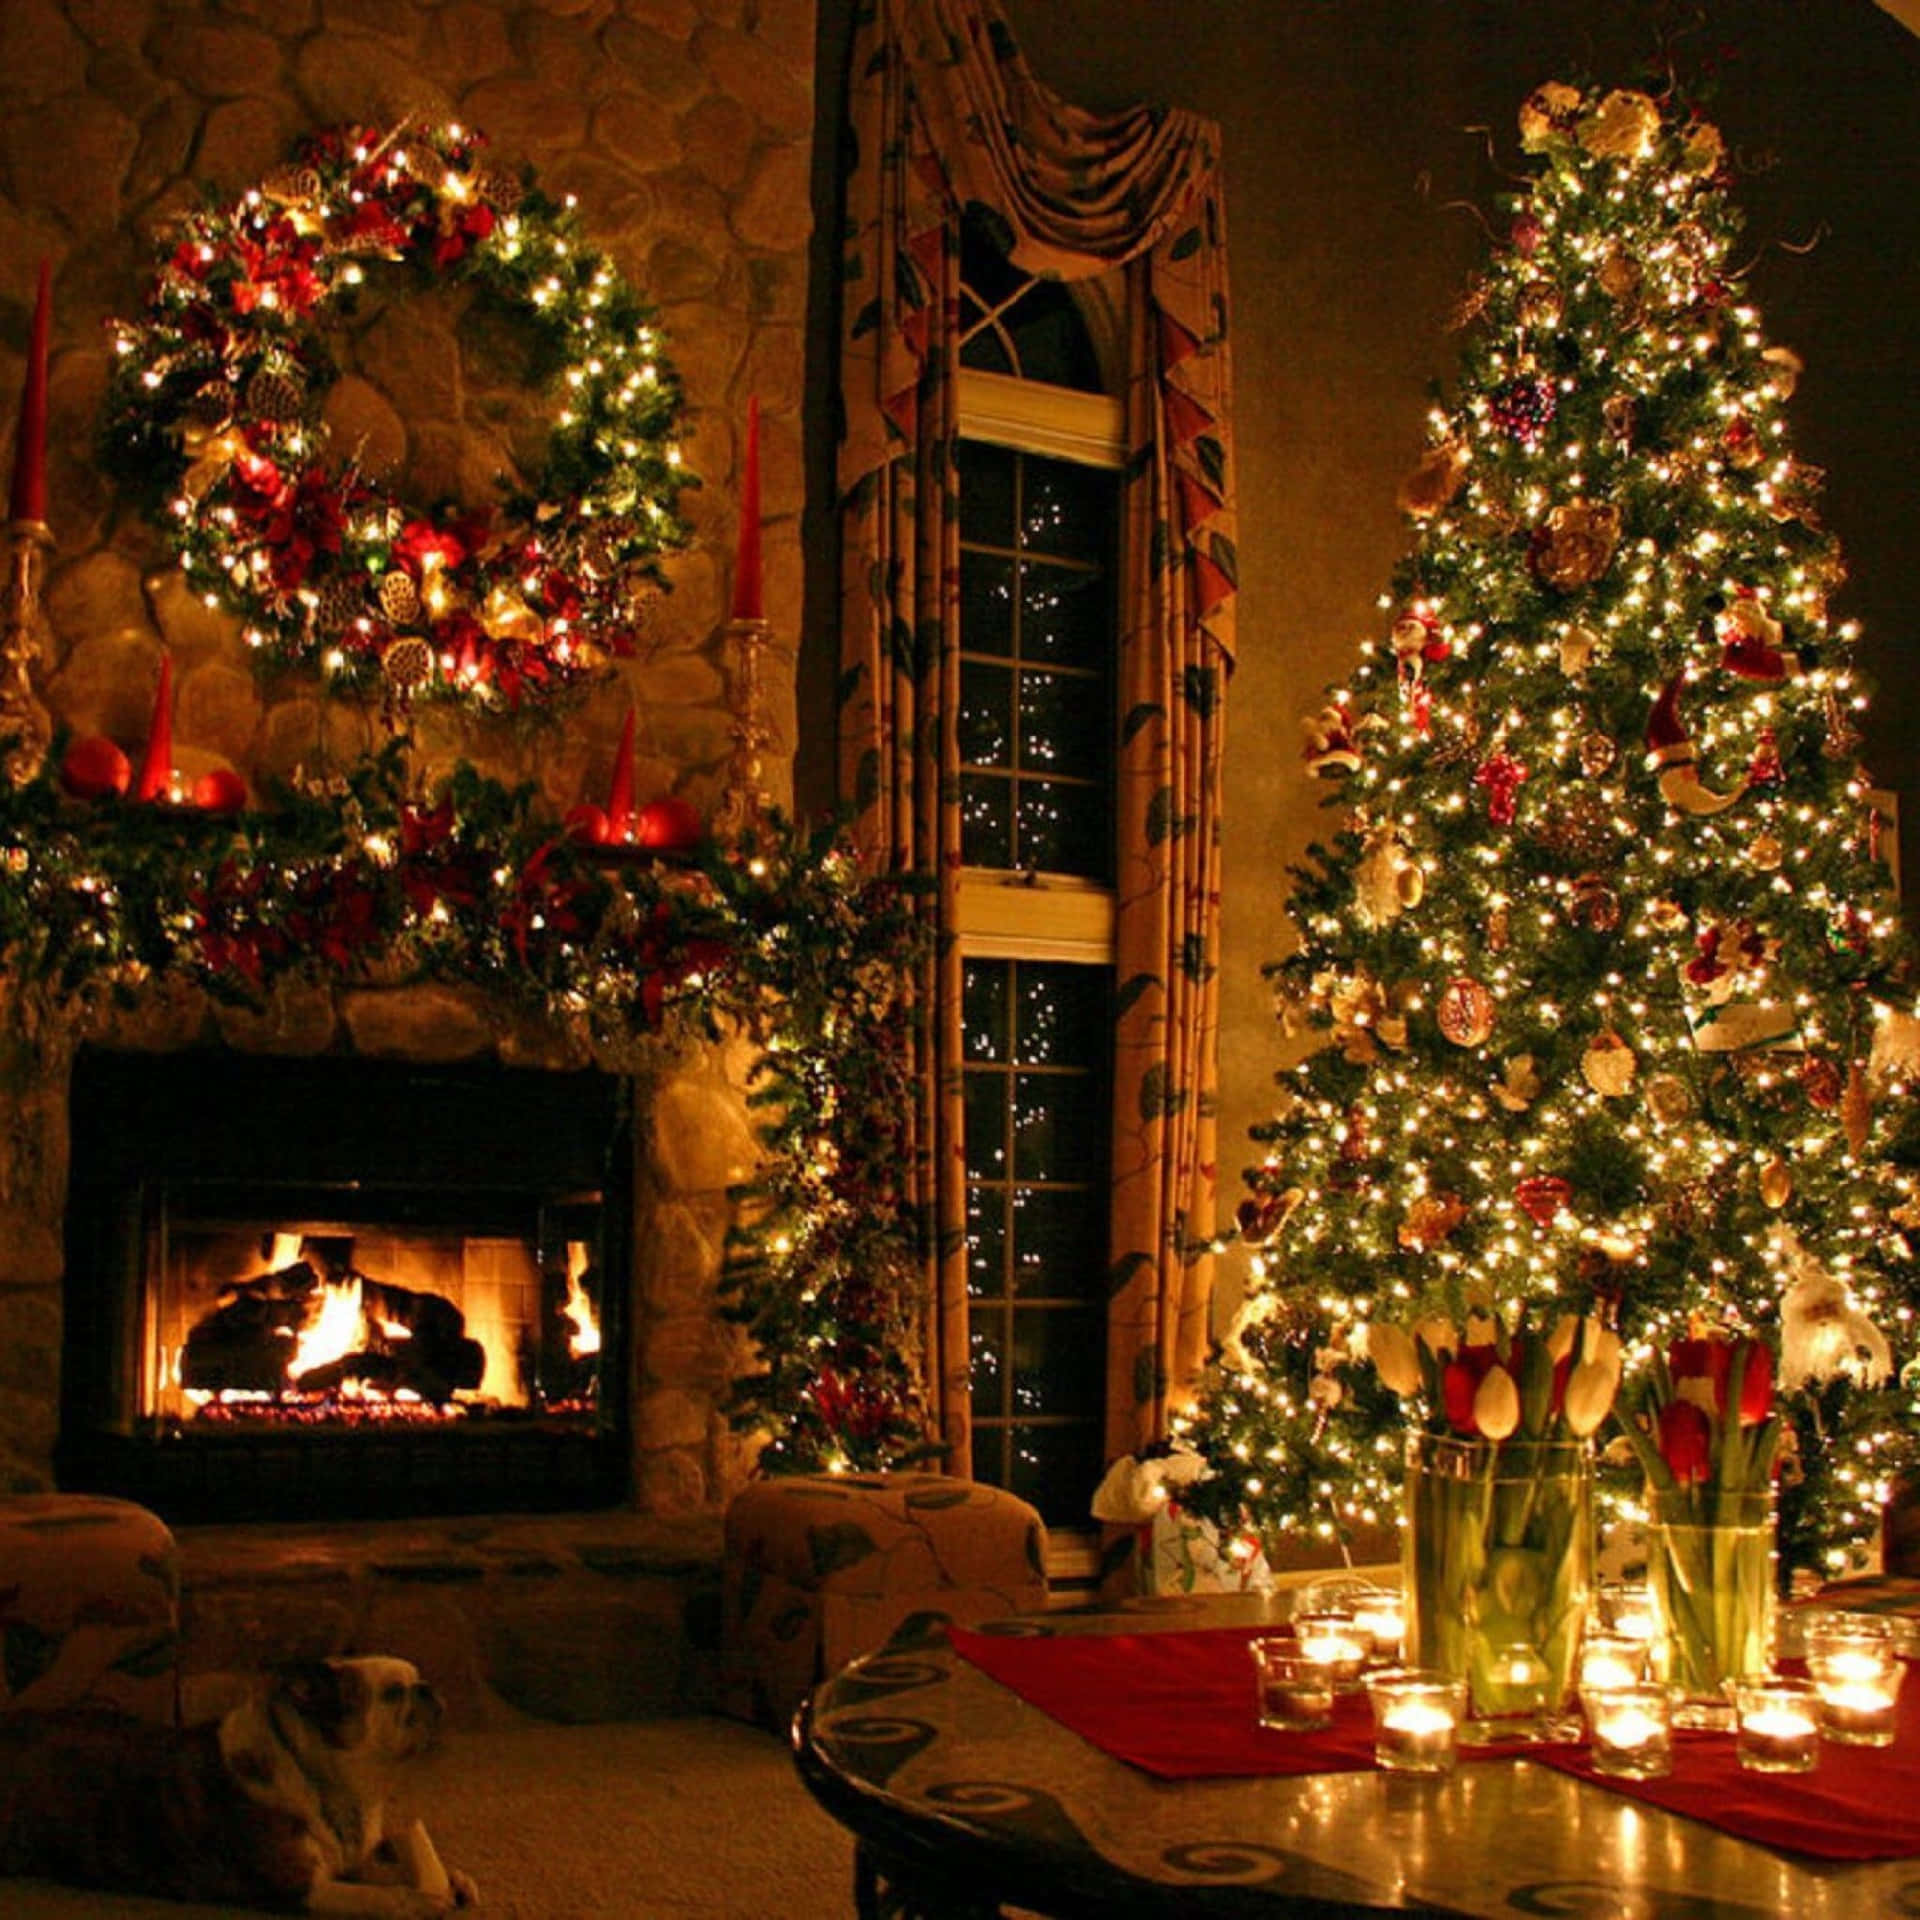 Weihnachtsbaumim Wohnzimmer Mit Kerzen. Wallpaper